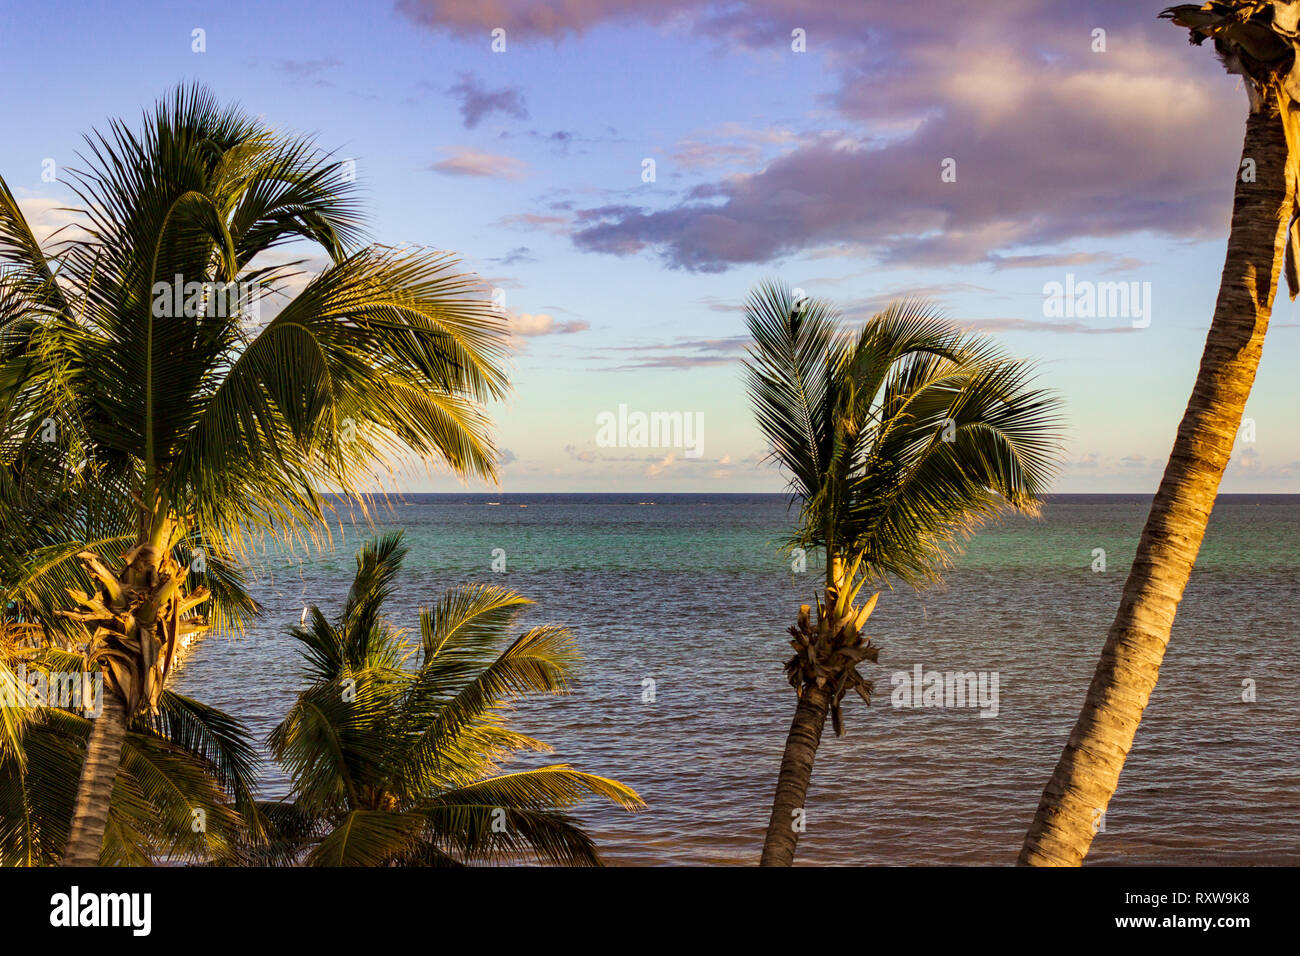 La ligne de palmiers balayés par le port de San Pedro, Ambergris Caye, Belize. Banque D'Images